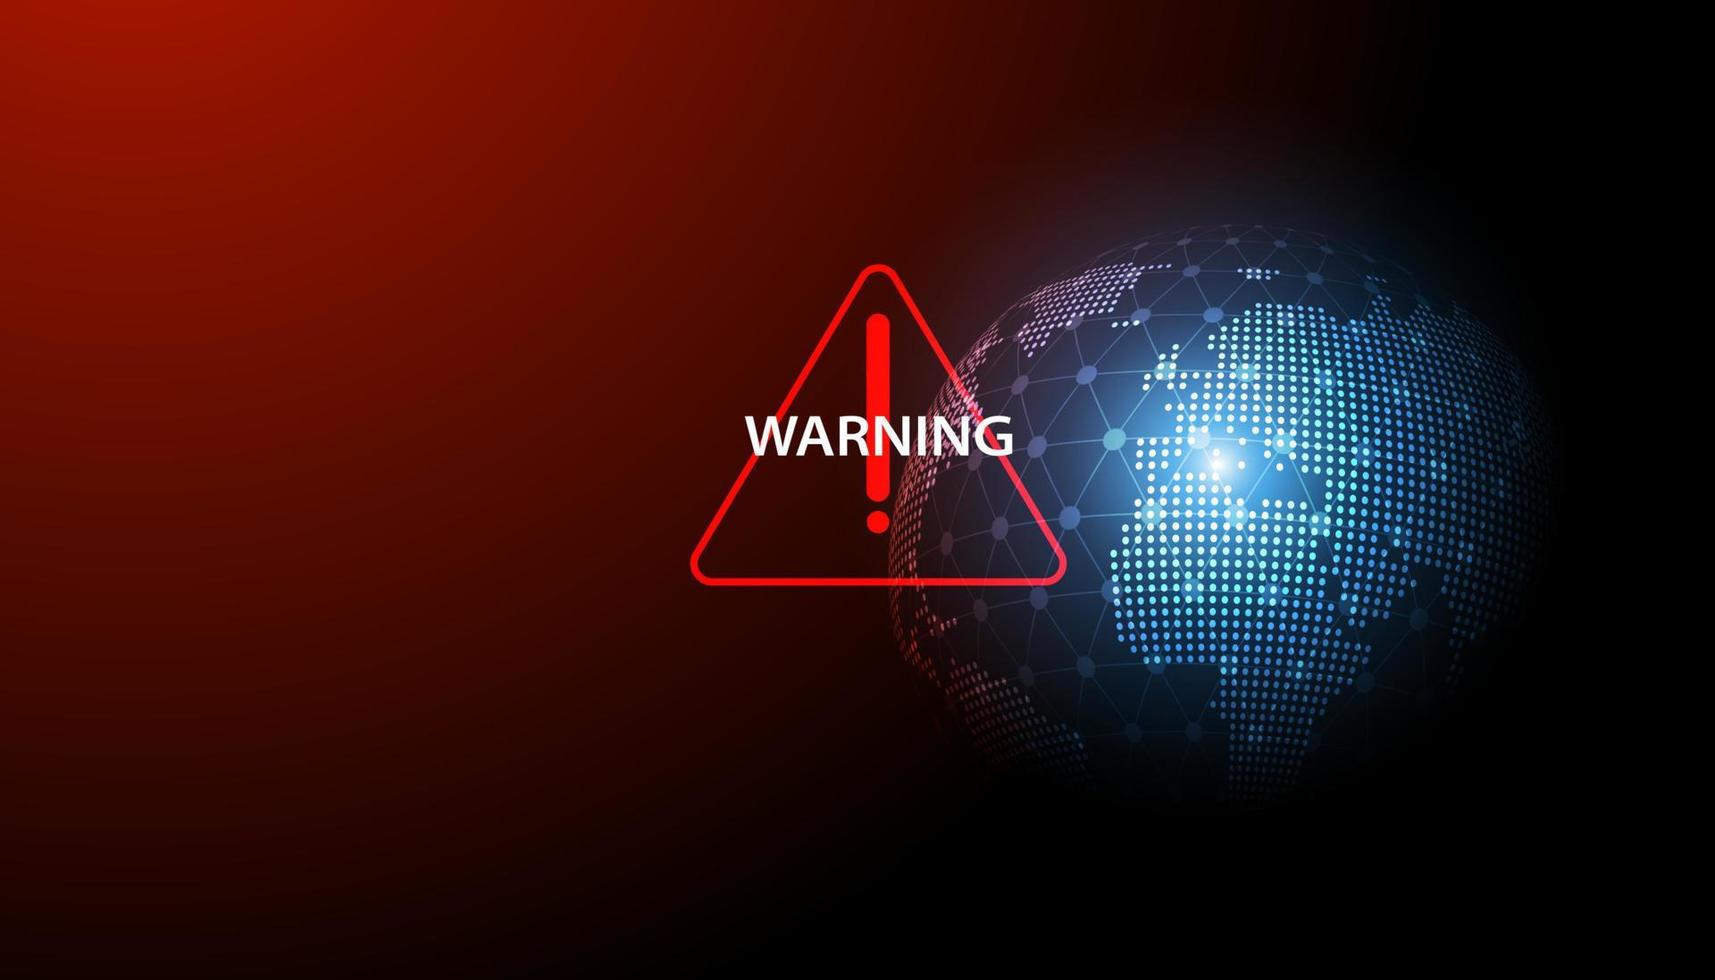 símbolo de advertencia rojo abstracto en el fondo del mapa mundial para advertir desastres o amenazas de defensa cibernética crisis de calentamiento global o guerra vector